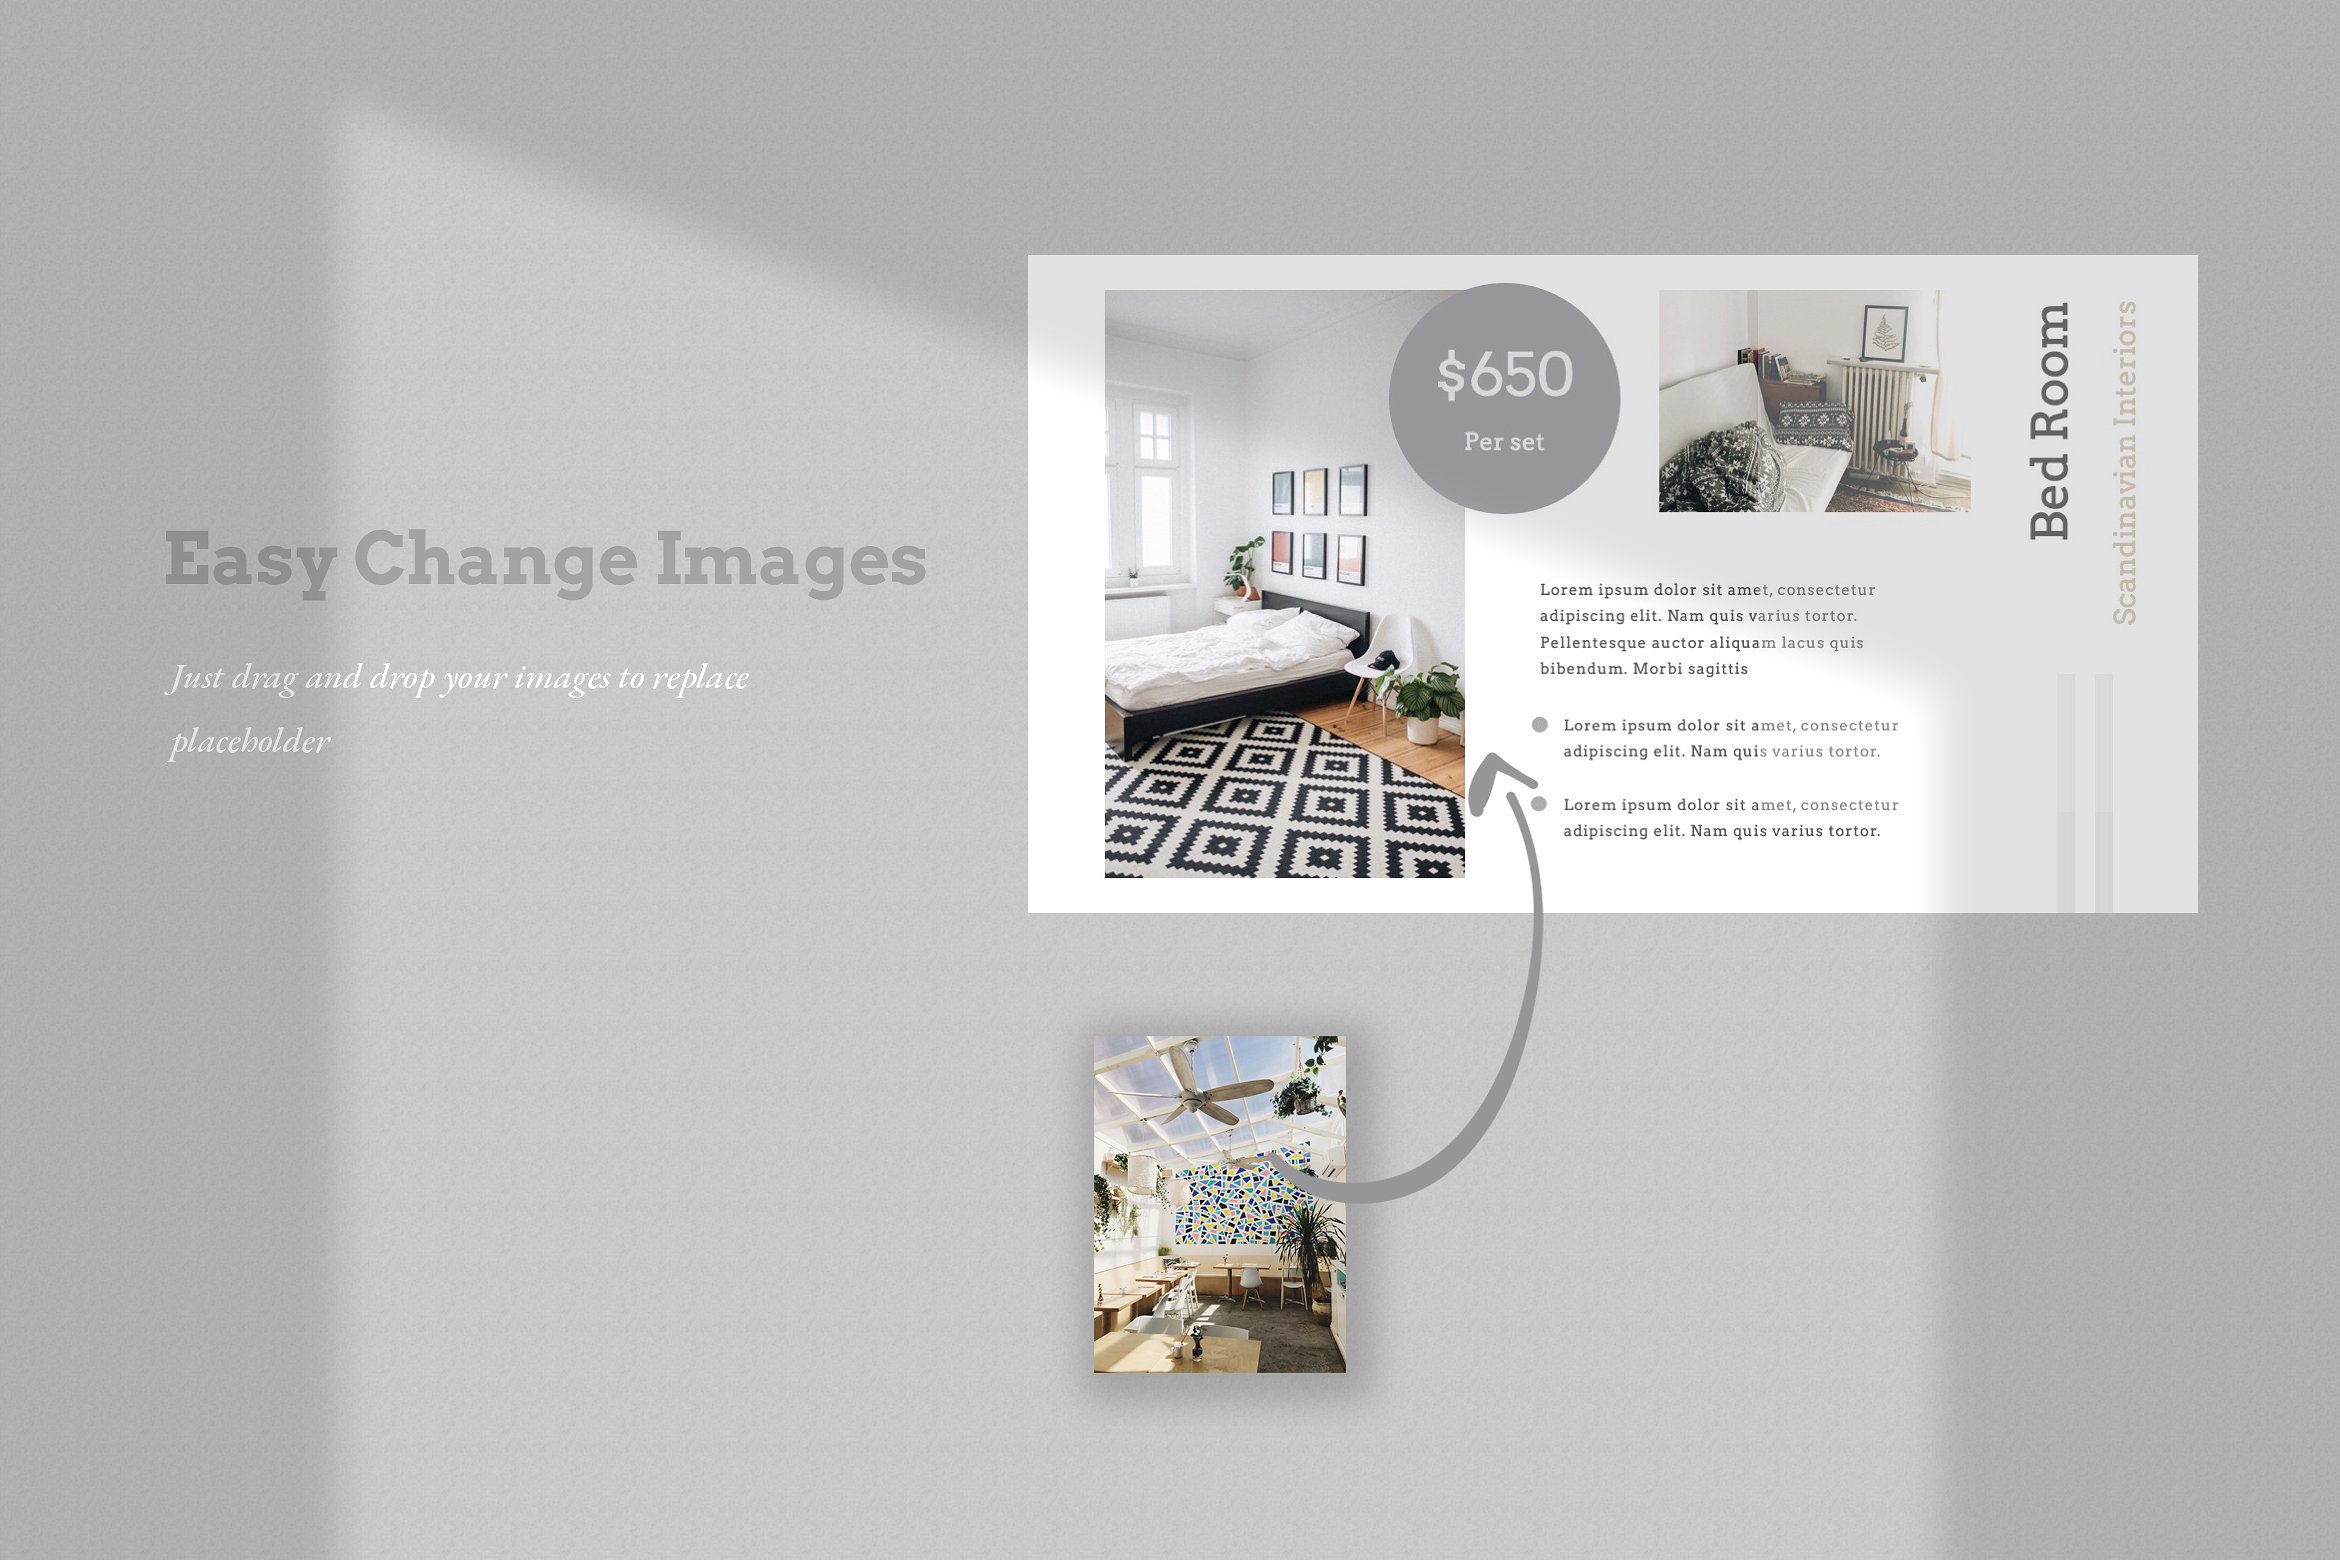 现代简约室内家居设计作品演示幻灯片模板  Modern Minimalist Interior Home Design Work Presentation Slide Template插图5